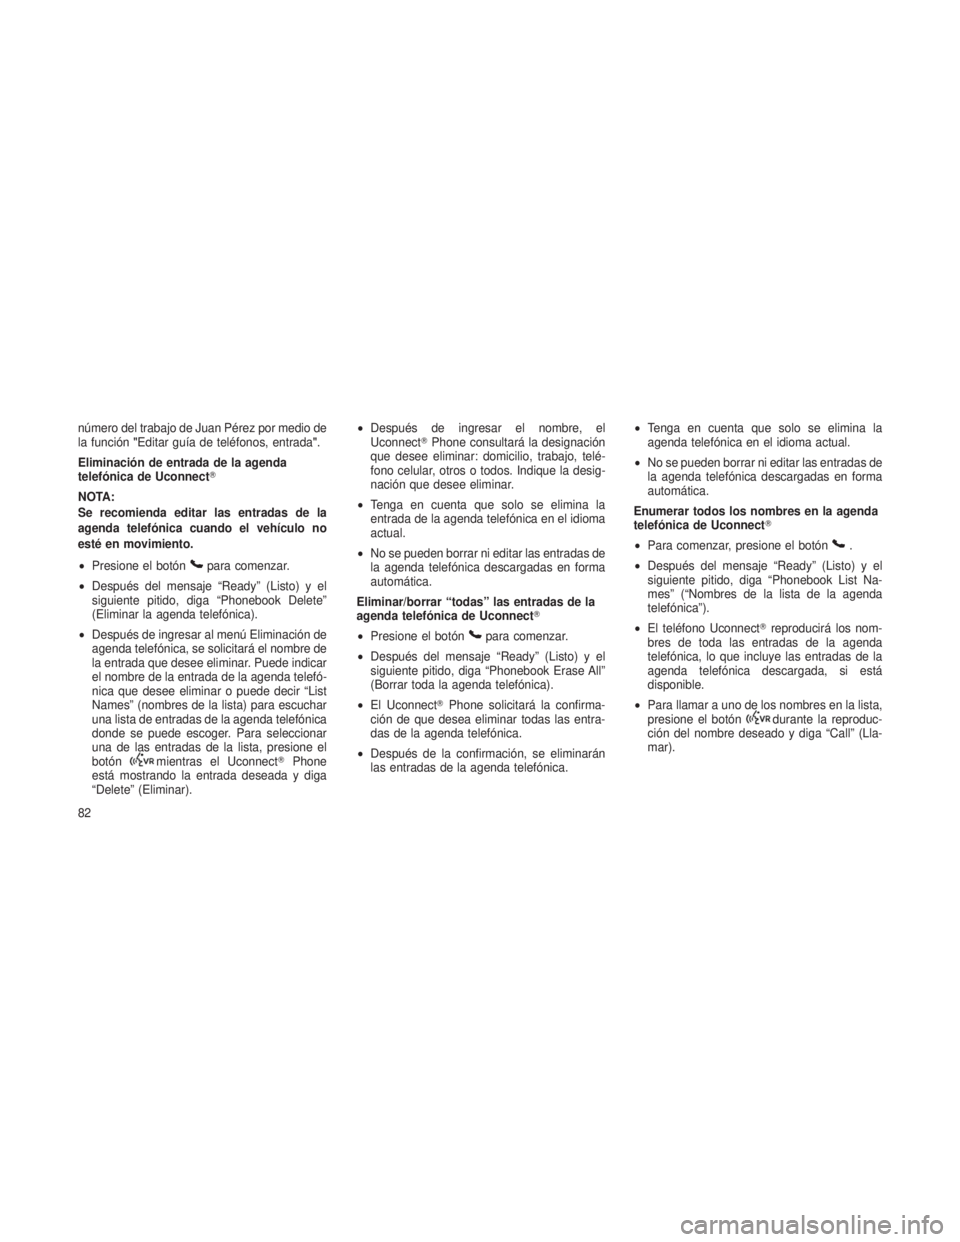 JEEP PATRIOT 2019  Manual de Empleo y Cuidado (in Spanish) número del trabajo de Juan Pérez por medio de
la función"Editar guía de teléfonos, entrada ".
Eliminación de entrada de la agenda
telefónica de Uconnect
NOTA:
Se recomienda editar las 